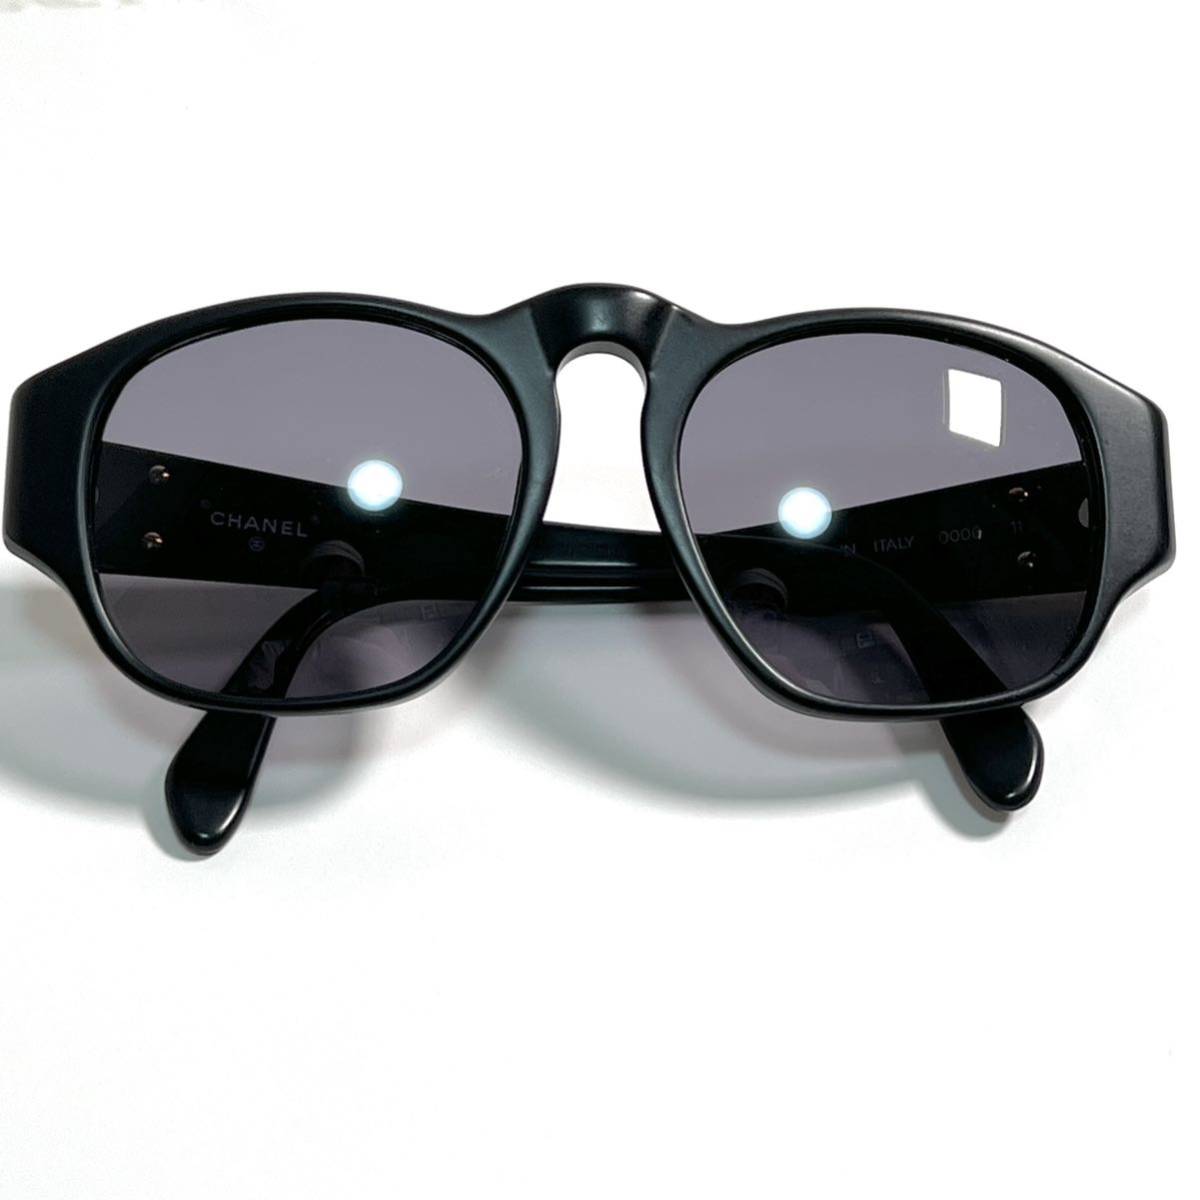 CHANEL シャネル サングラス ココマーク マットブラック 黒 0006 11 メガネ めがね 眼鏡 アイウェア レディース ゴールド金具 保存袋付